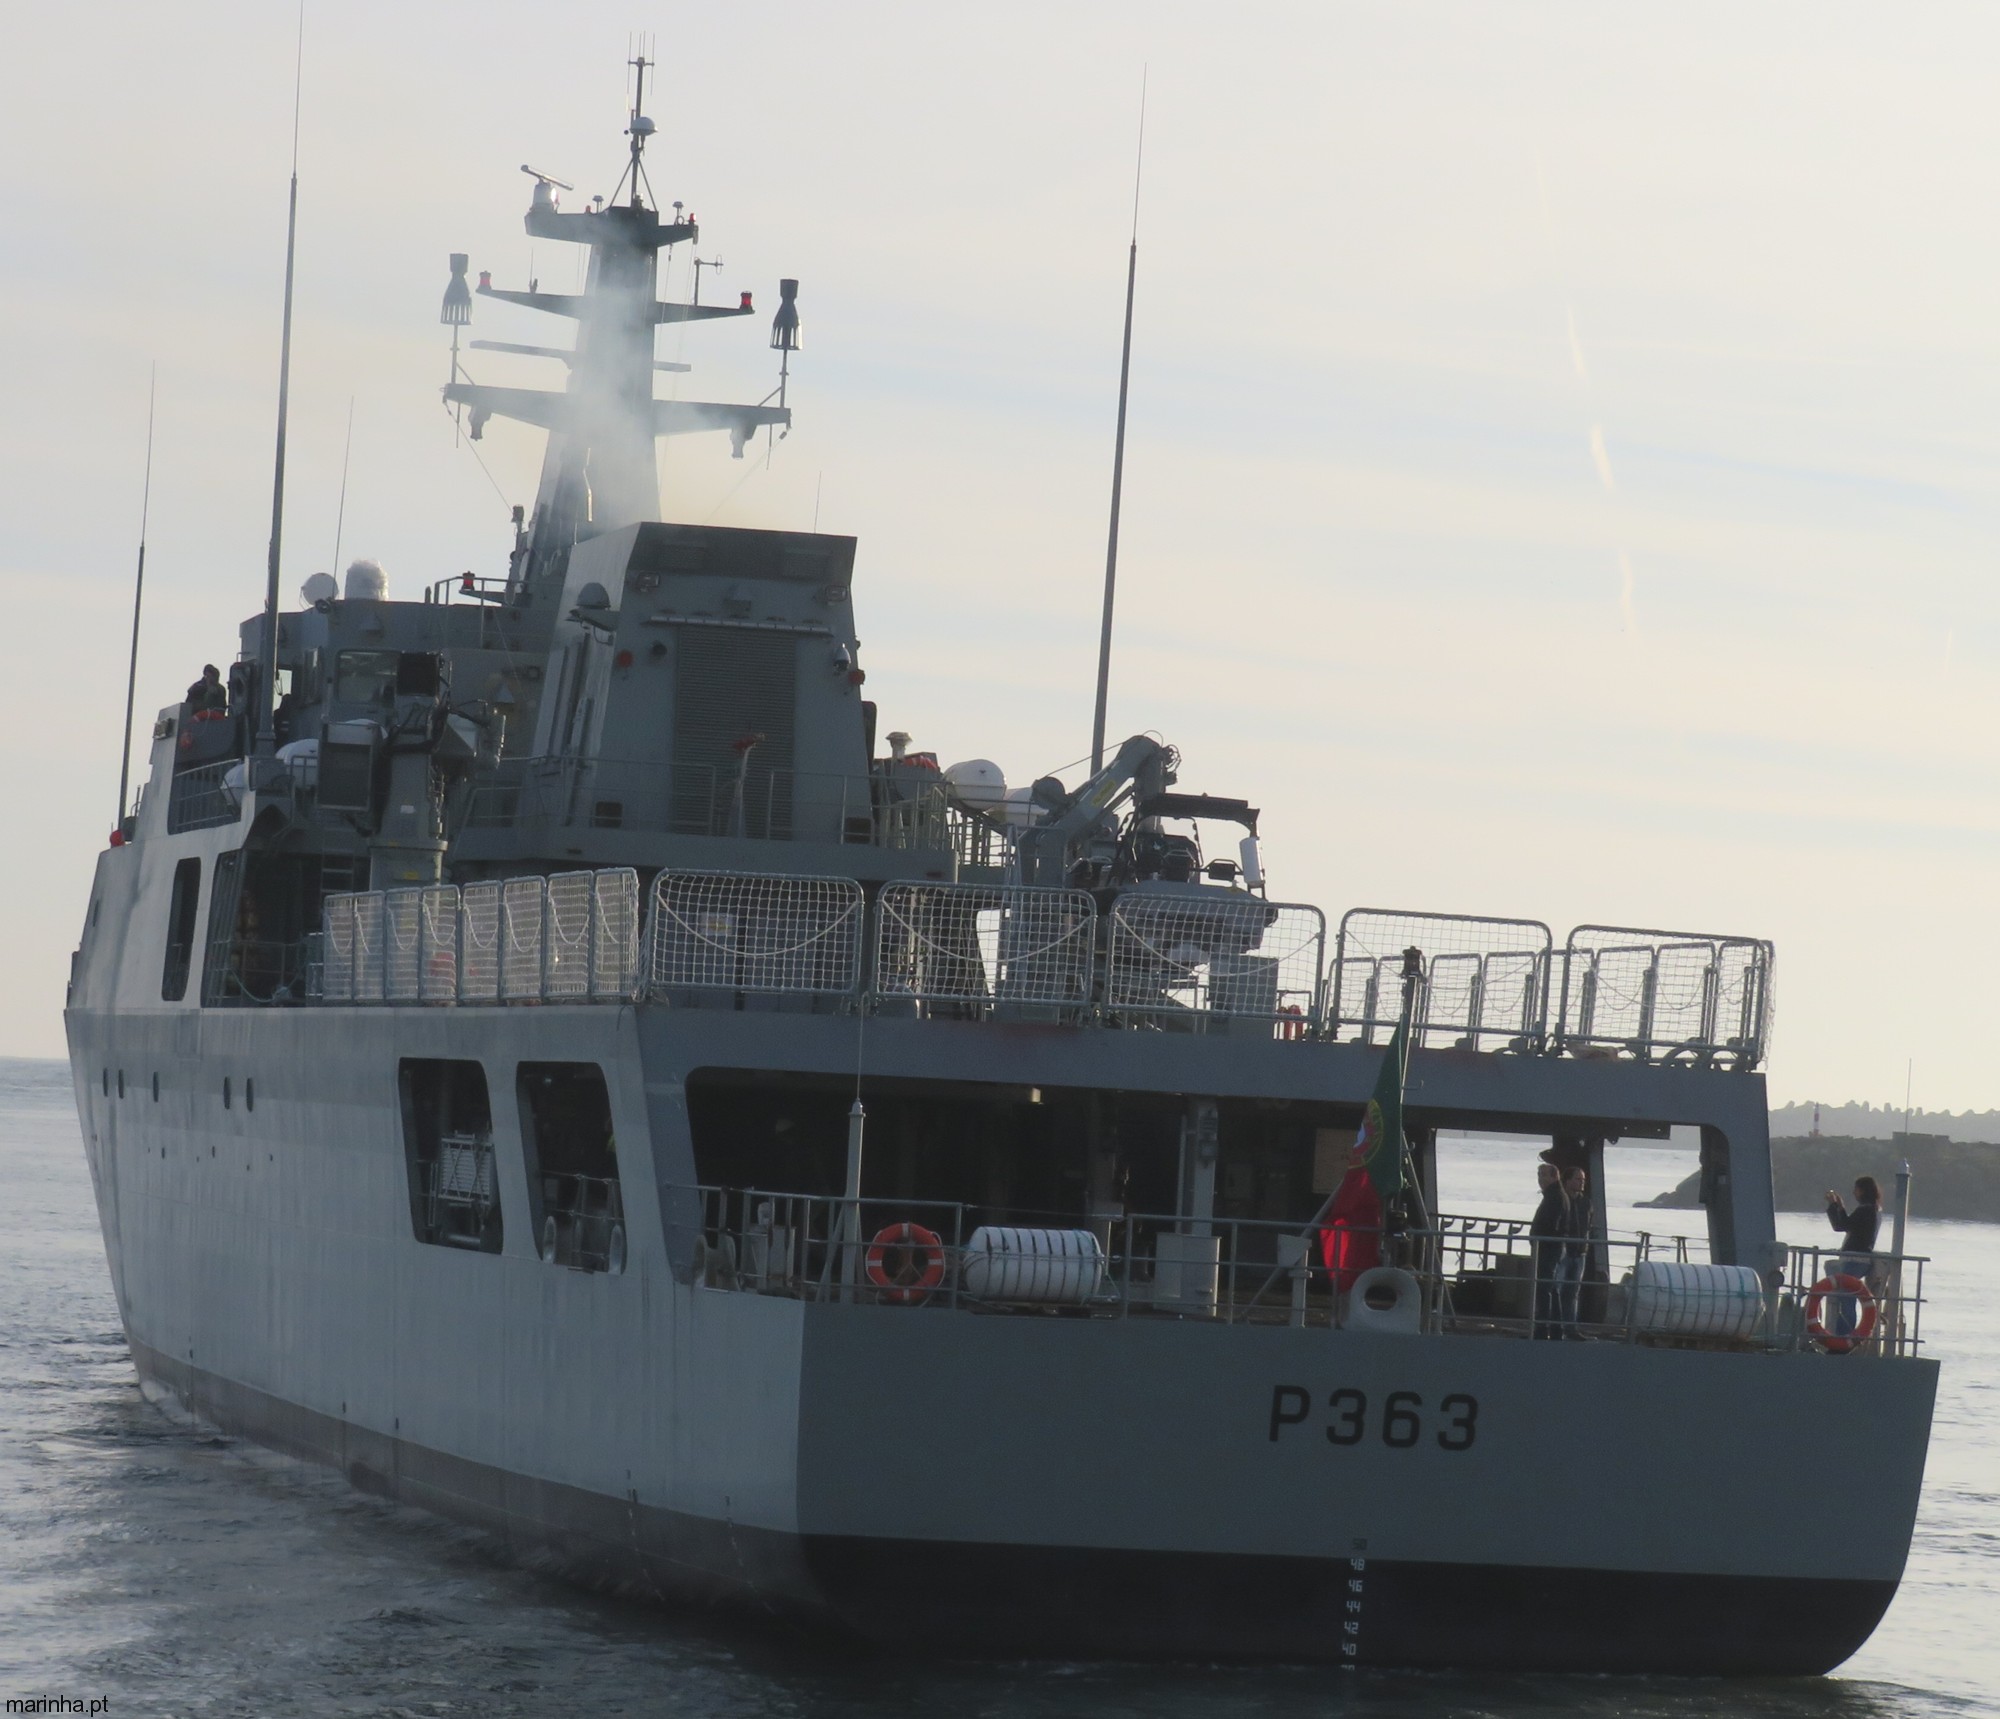 p-363 nrp setubal viana do castelo class offshore patrol vessel opv portuguese navy marinha 11